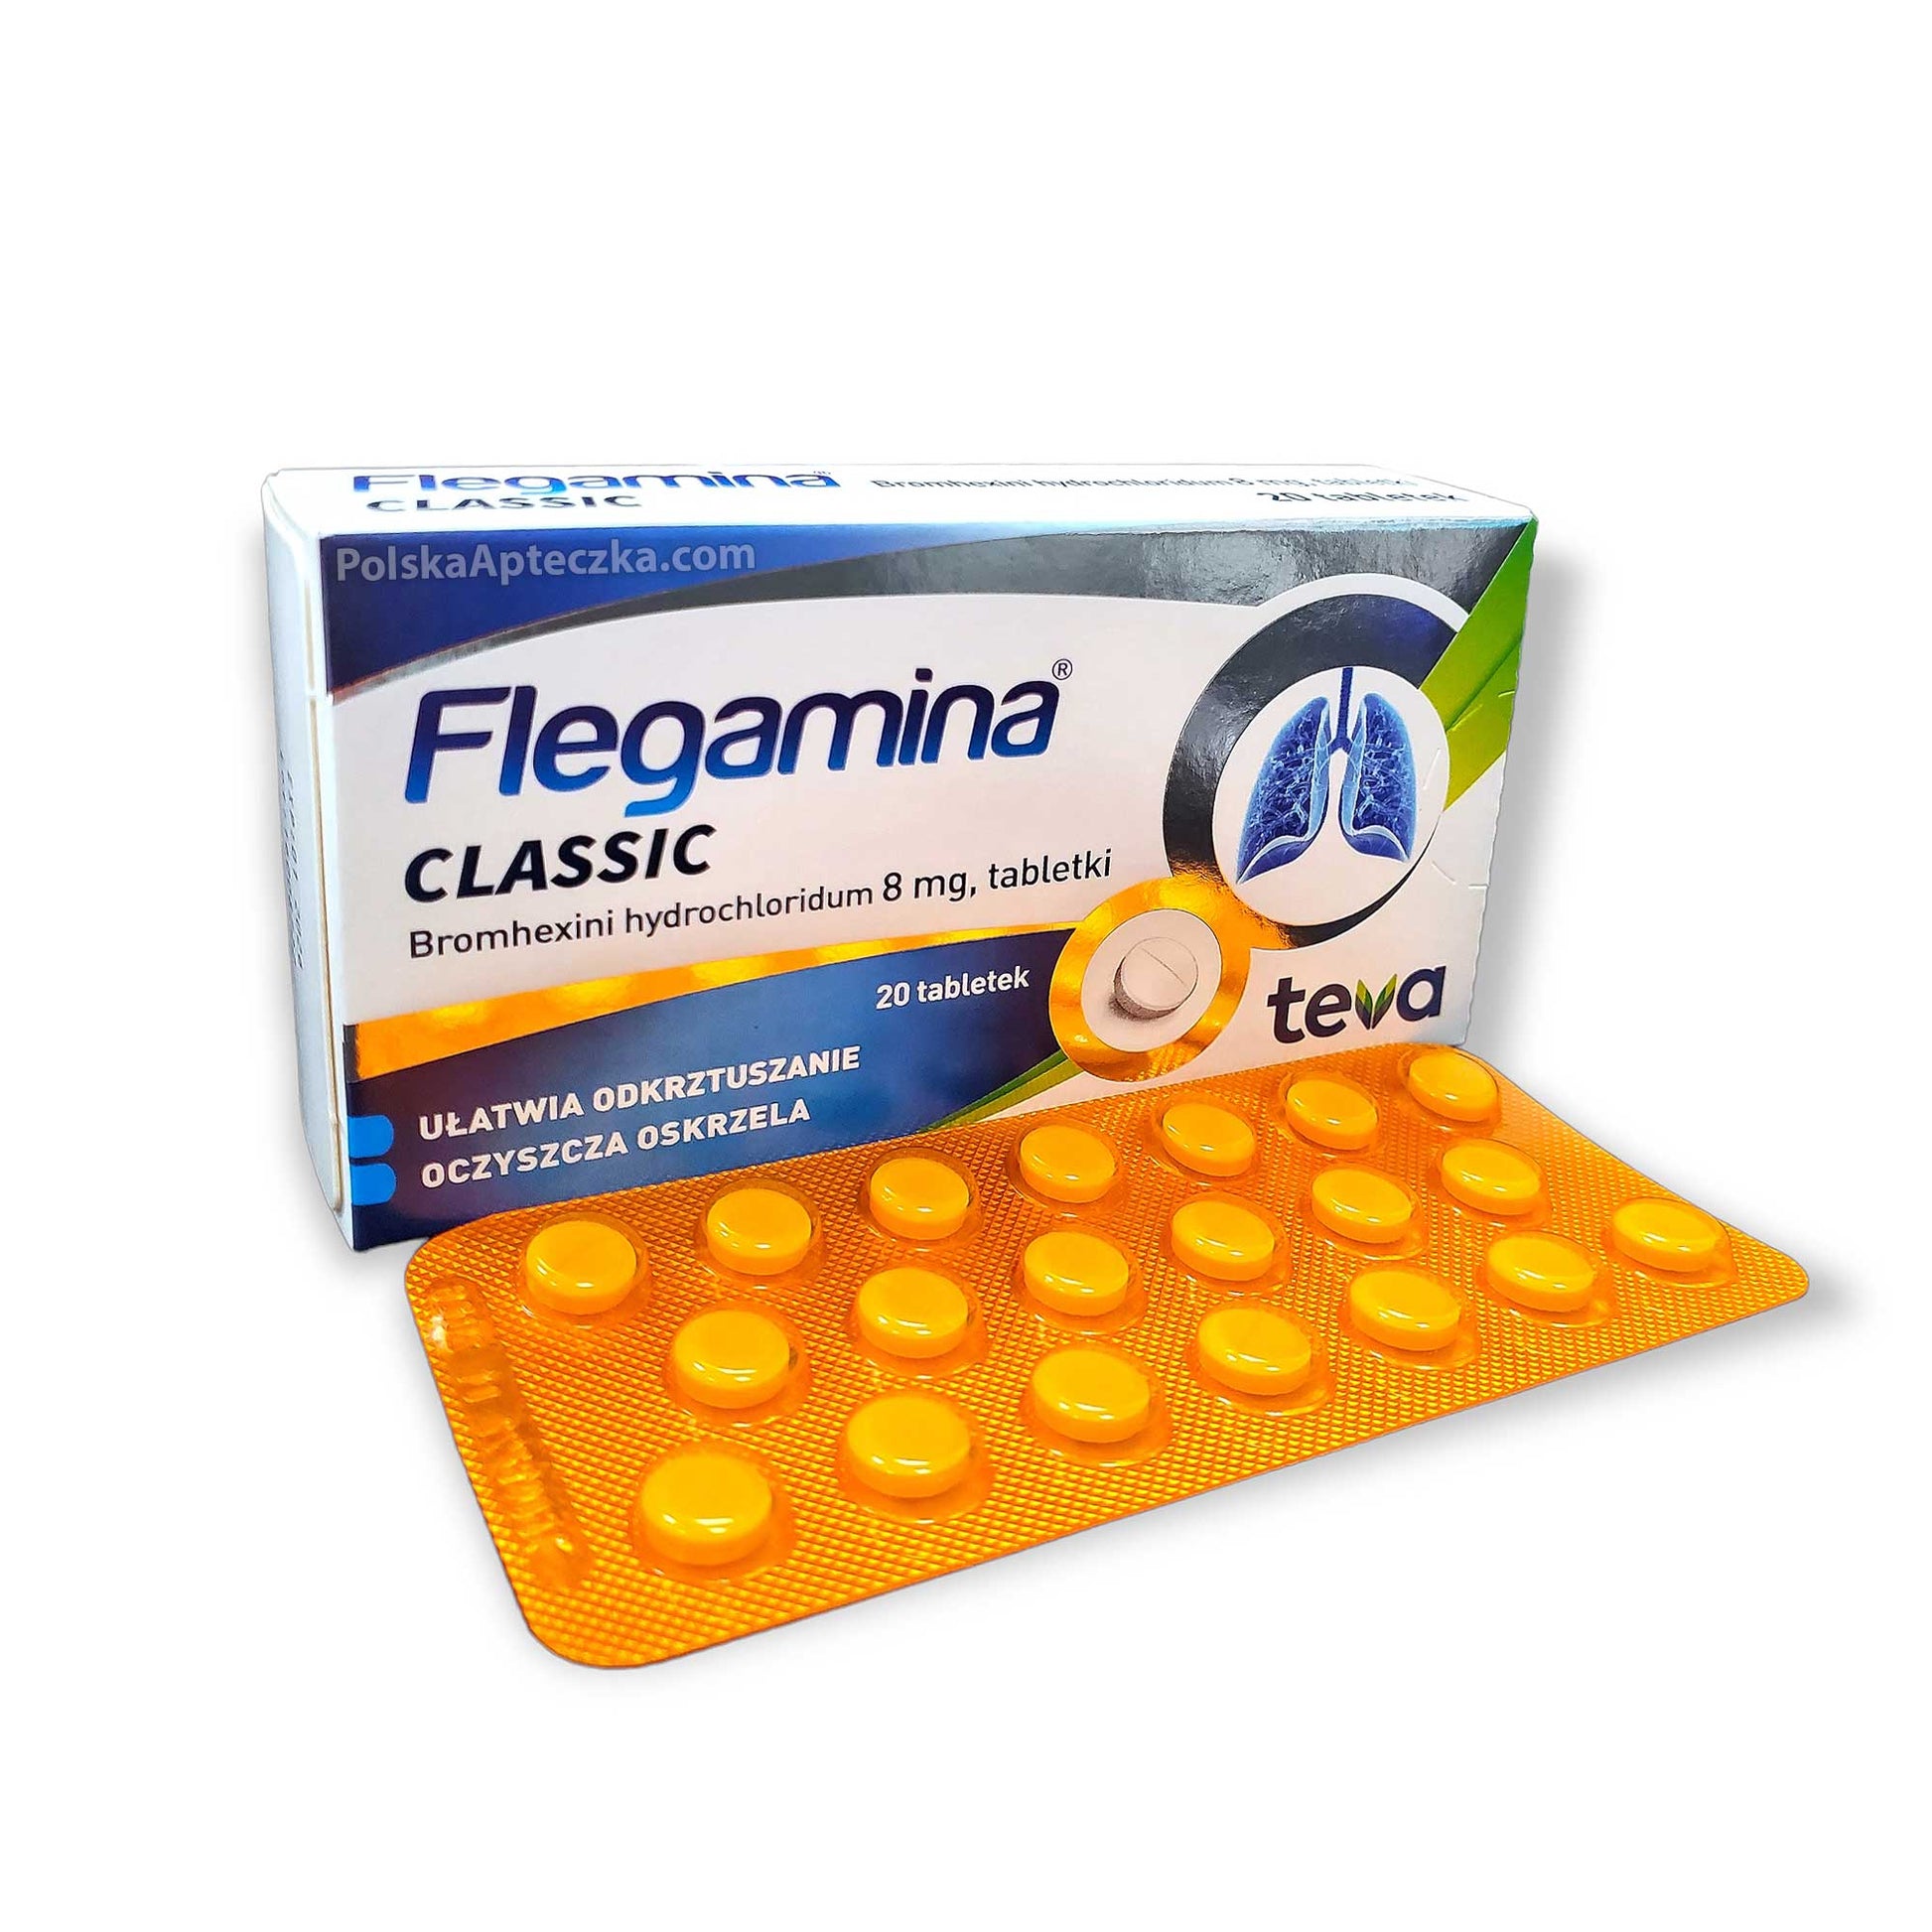 Flegamina 20 tabletki, Teva